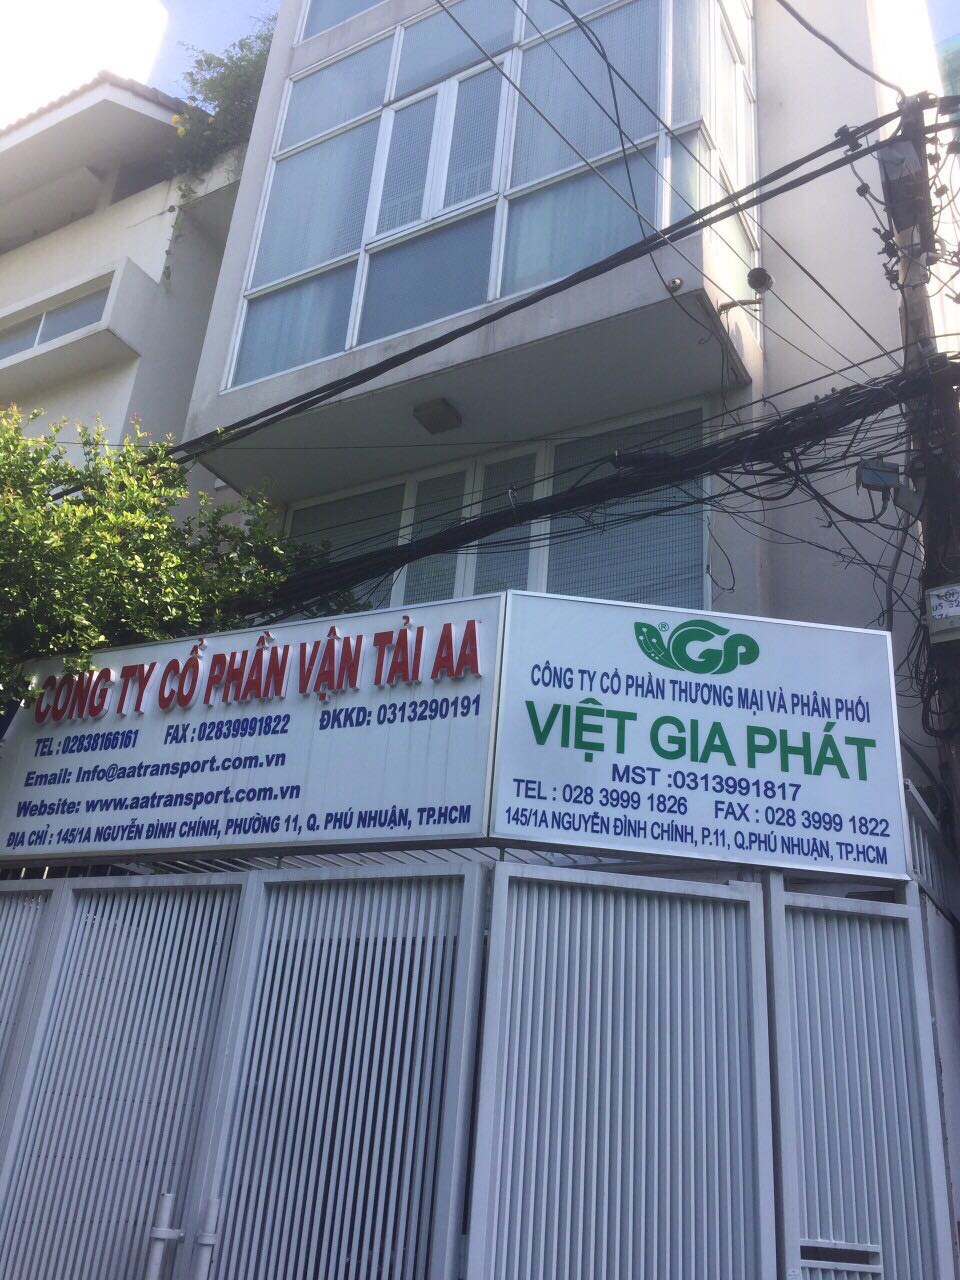 Bán nhà đường Lê Lai, P. Bến Thành, Q. 1 8x12m, 5 tầng. LH 0902.542.538 Ngọc Tiến 10031226